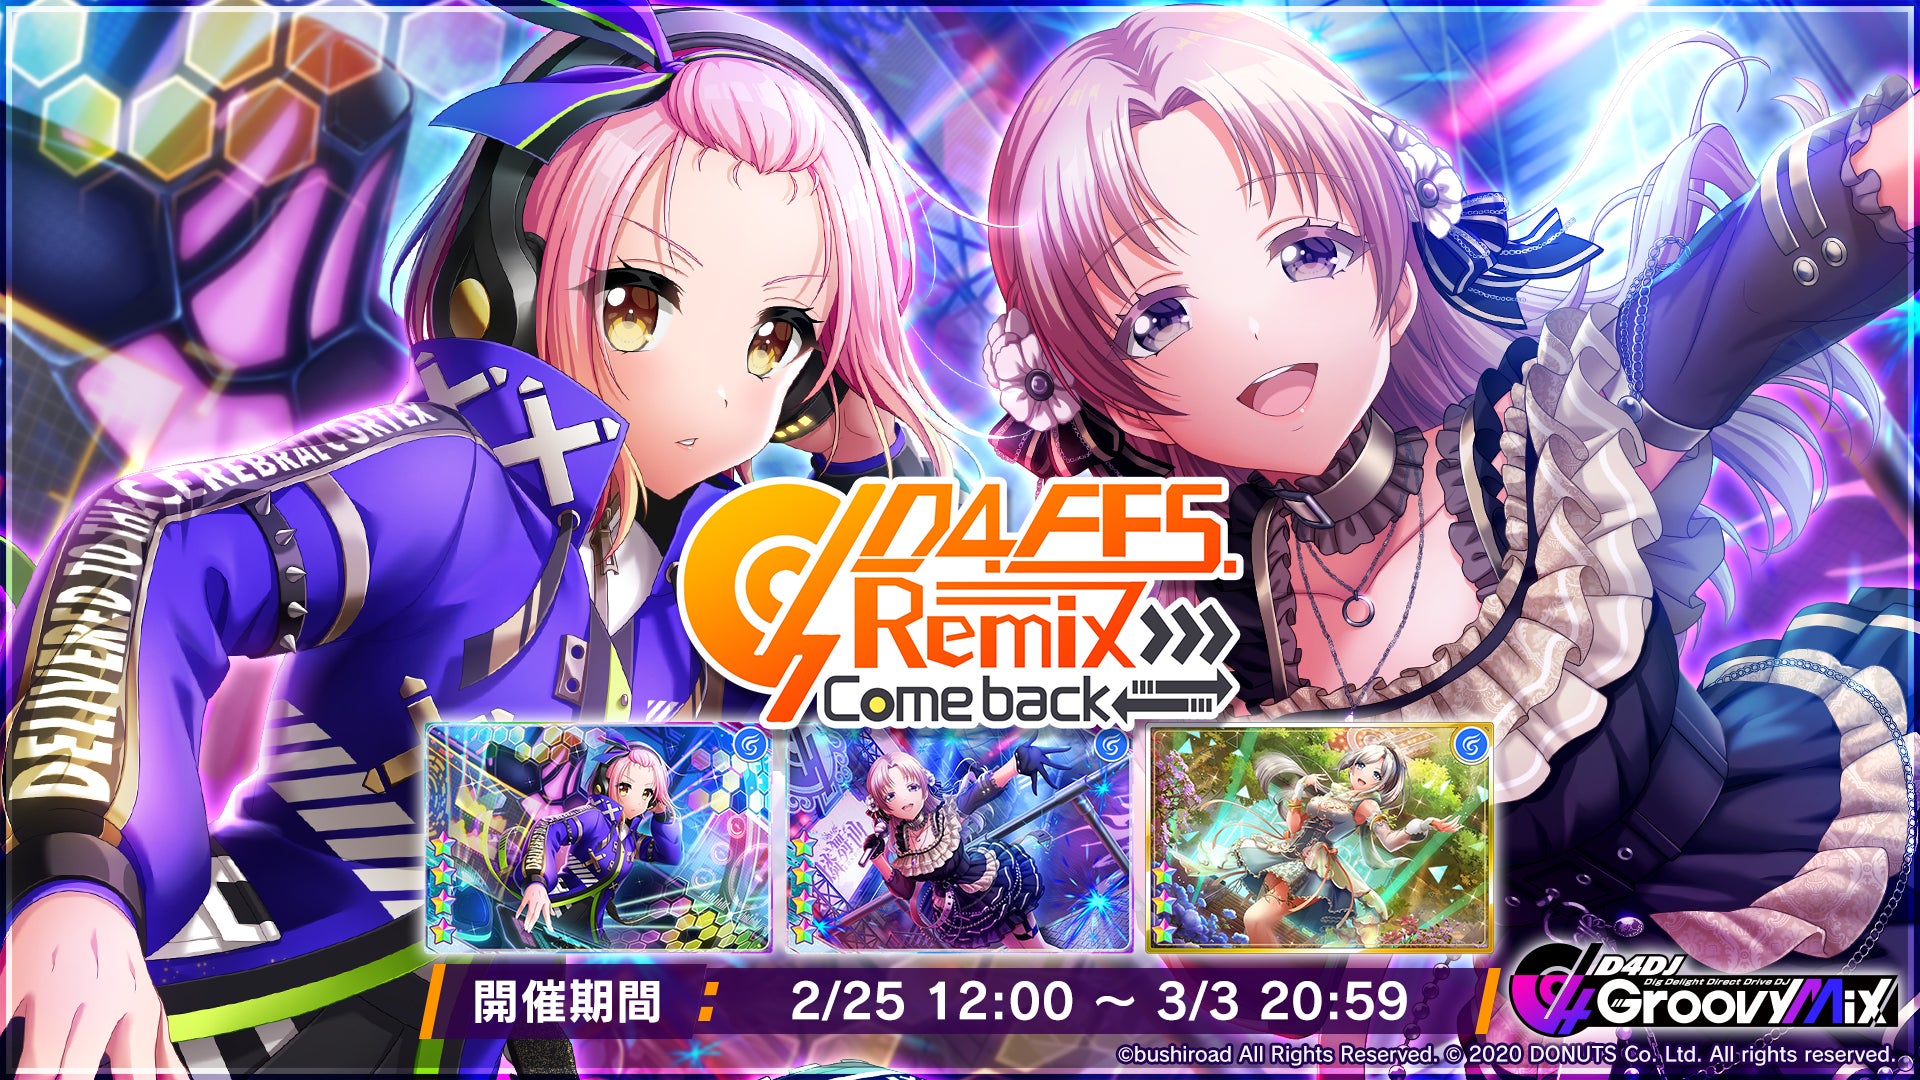 スマートフォン向けリズムゲーム「D4DJ Groovy Mix」イベント＆ガチャ「D4 FES.Remix -Come back-」開催！